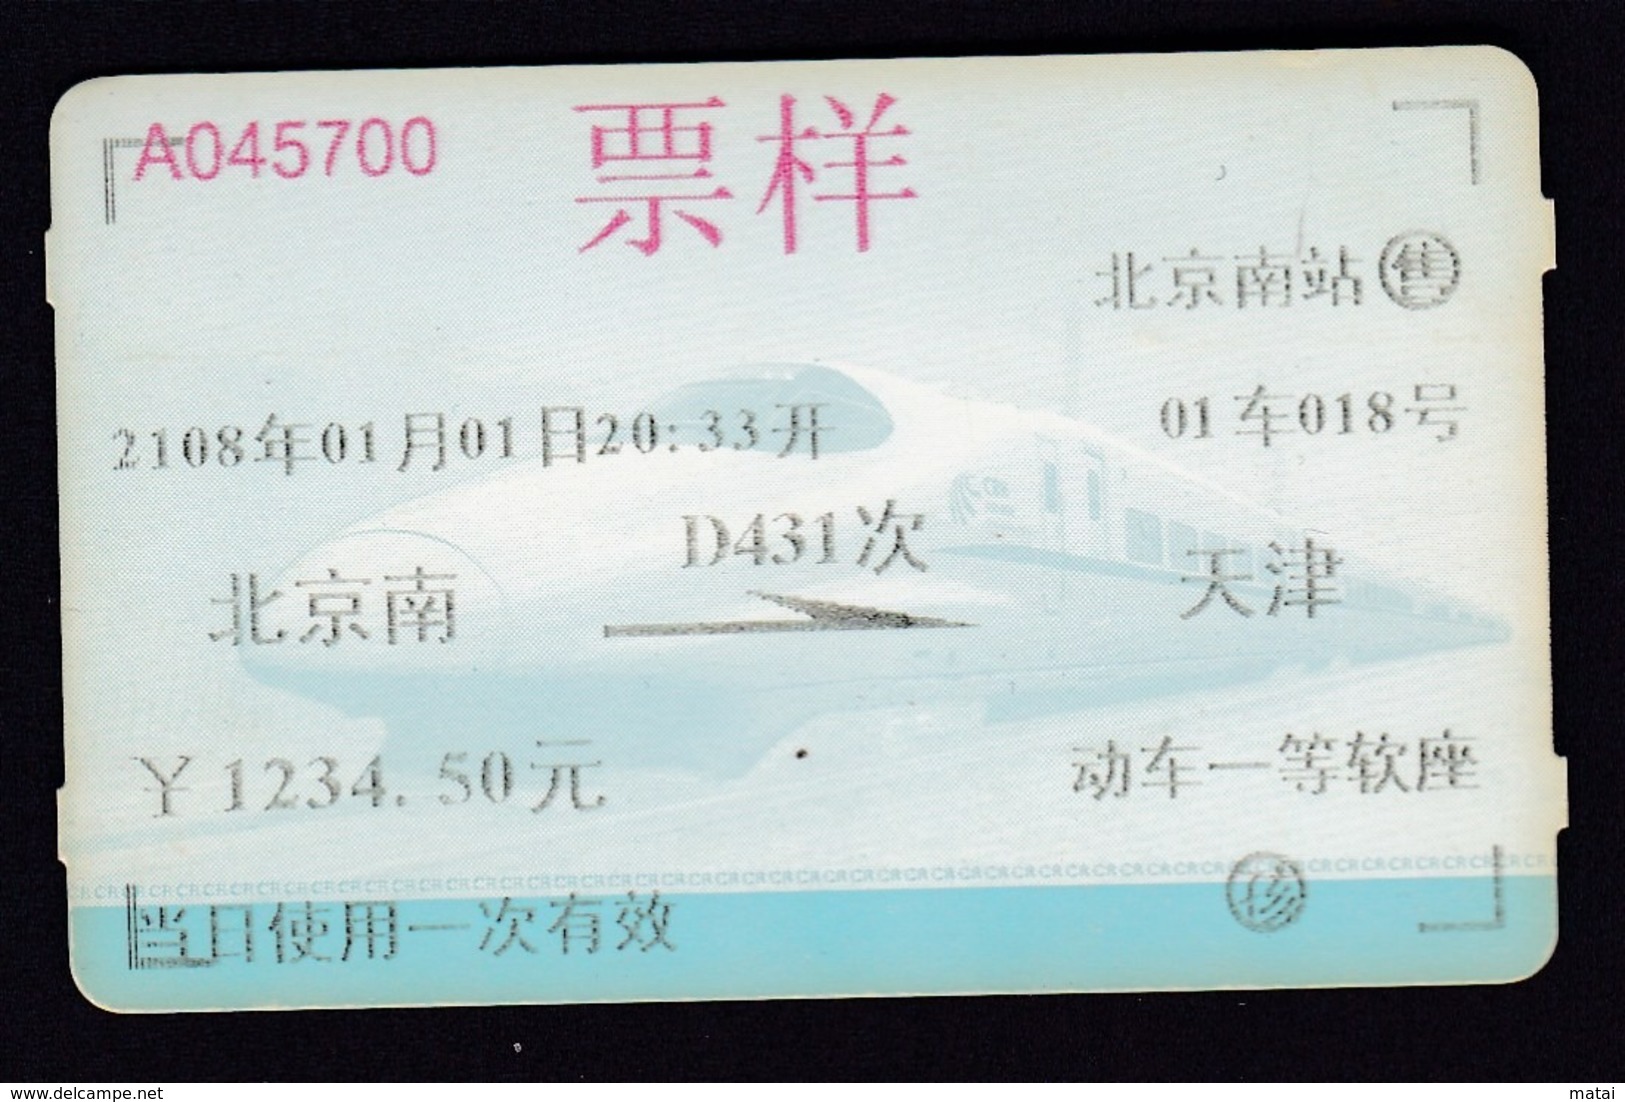 CHINA CHINE CINA 2108-01-01Beijing To Tianjin  1234.5 YUAN Specimen - Historische Dokumente